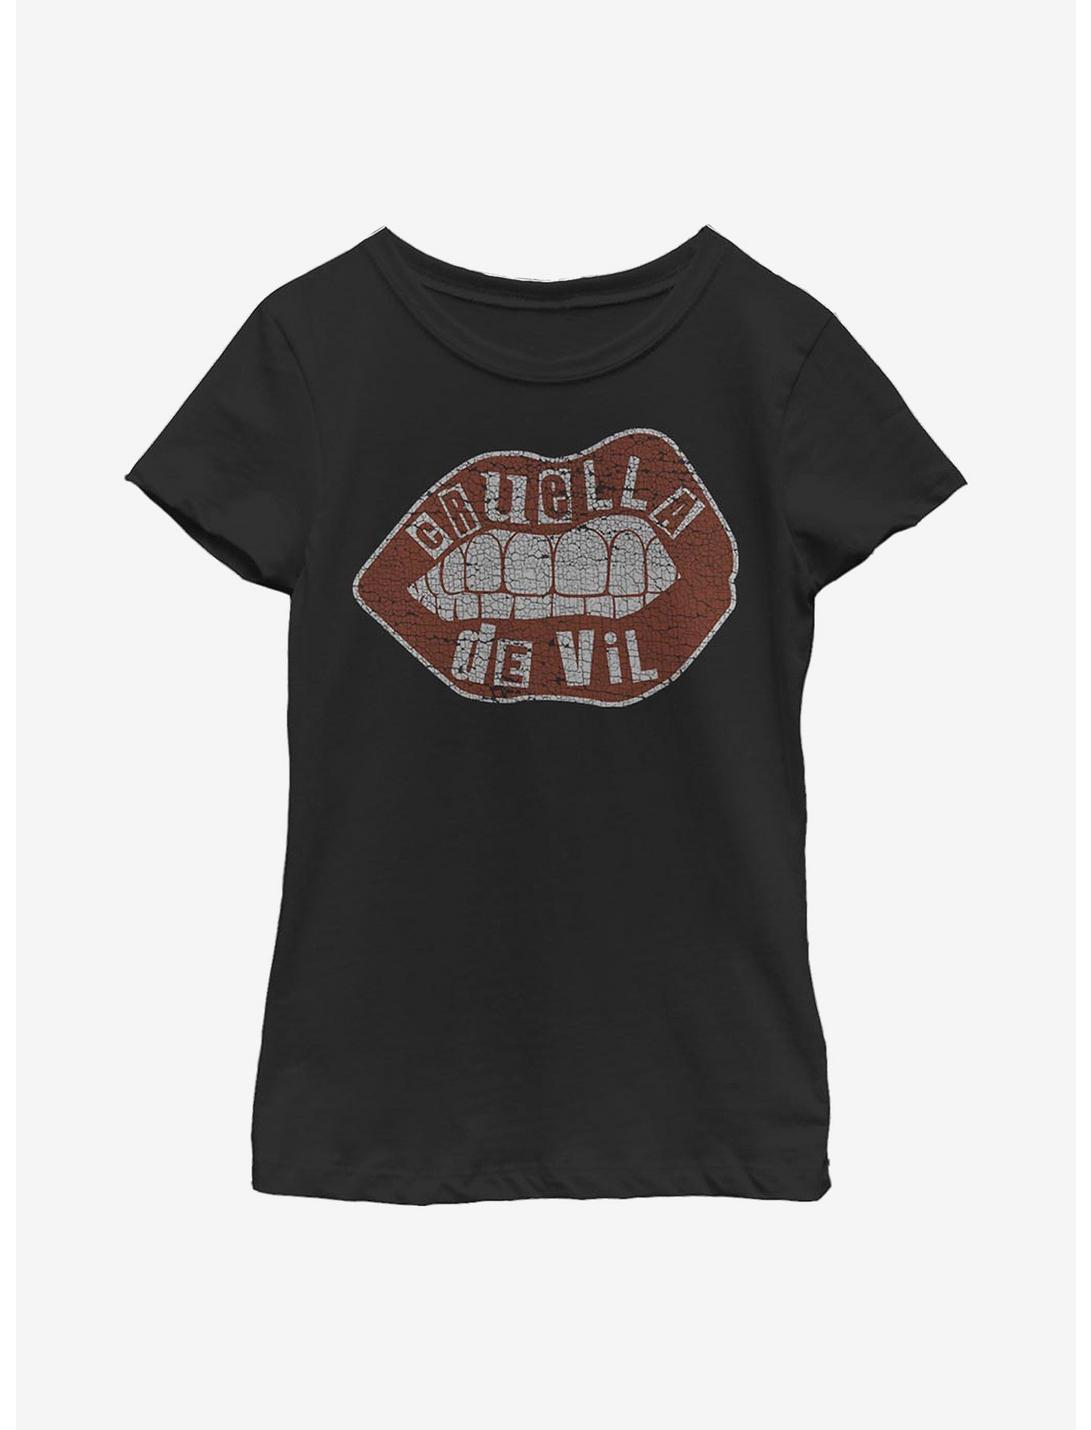 Disney Cruella De Vil Lips Youth Girls T-Shirt, BLACK, hi-res